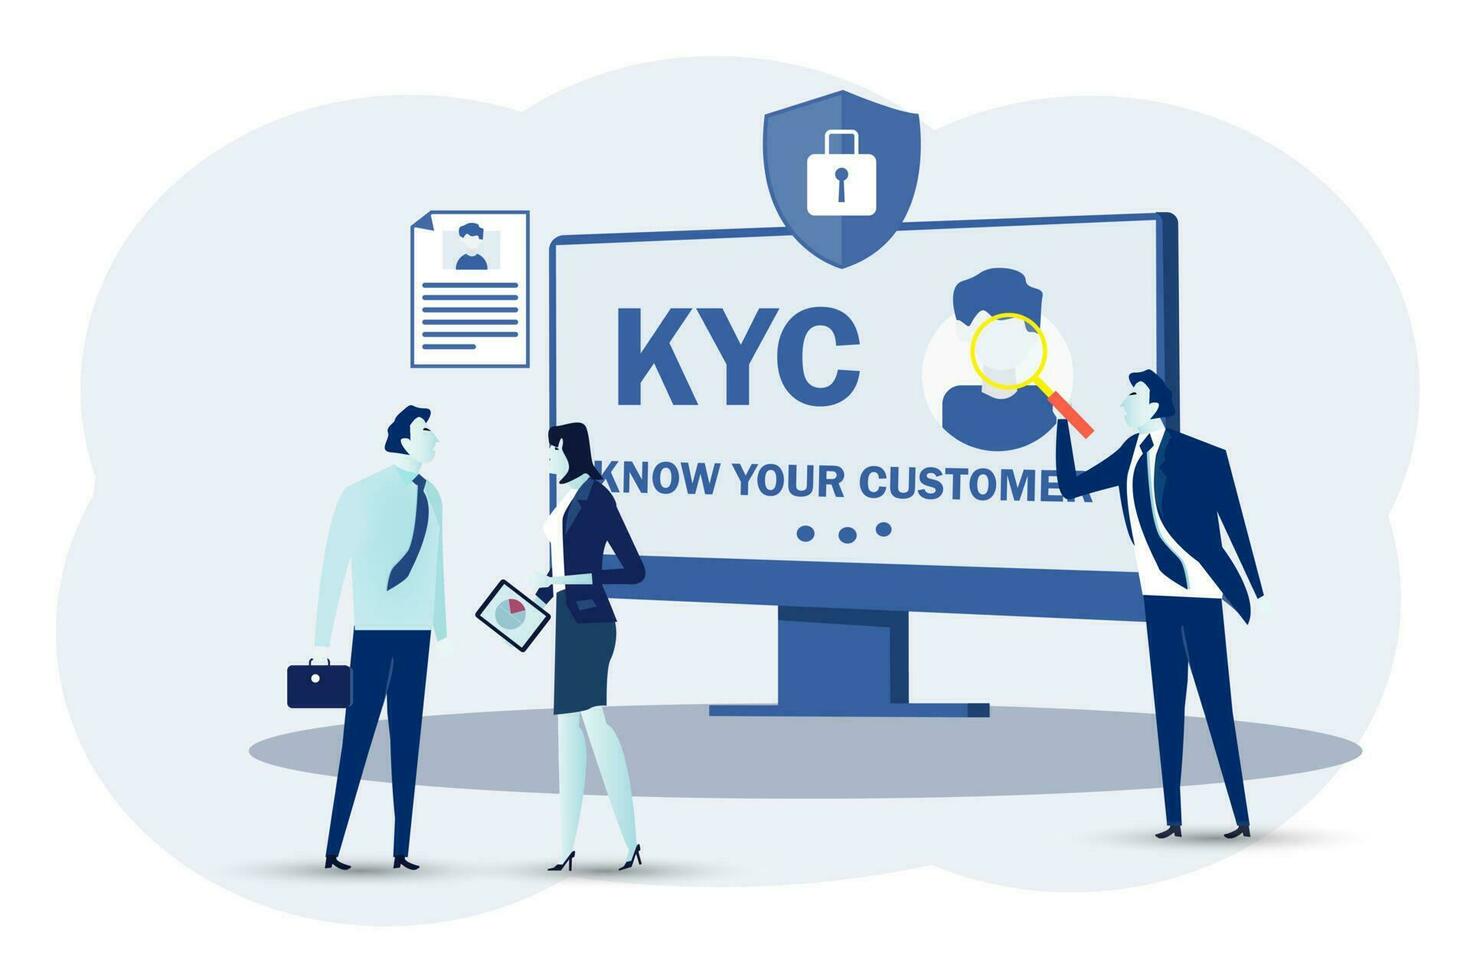 kyc, saber tu cliente concepto, negocio verificando de clientela identidad y evaluando su idoneidad, gente de negocios aprendizaje cliente perfil.vector ilustración. vector